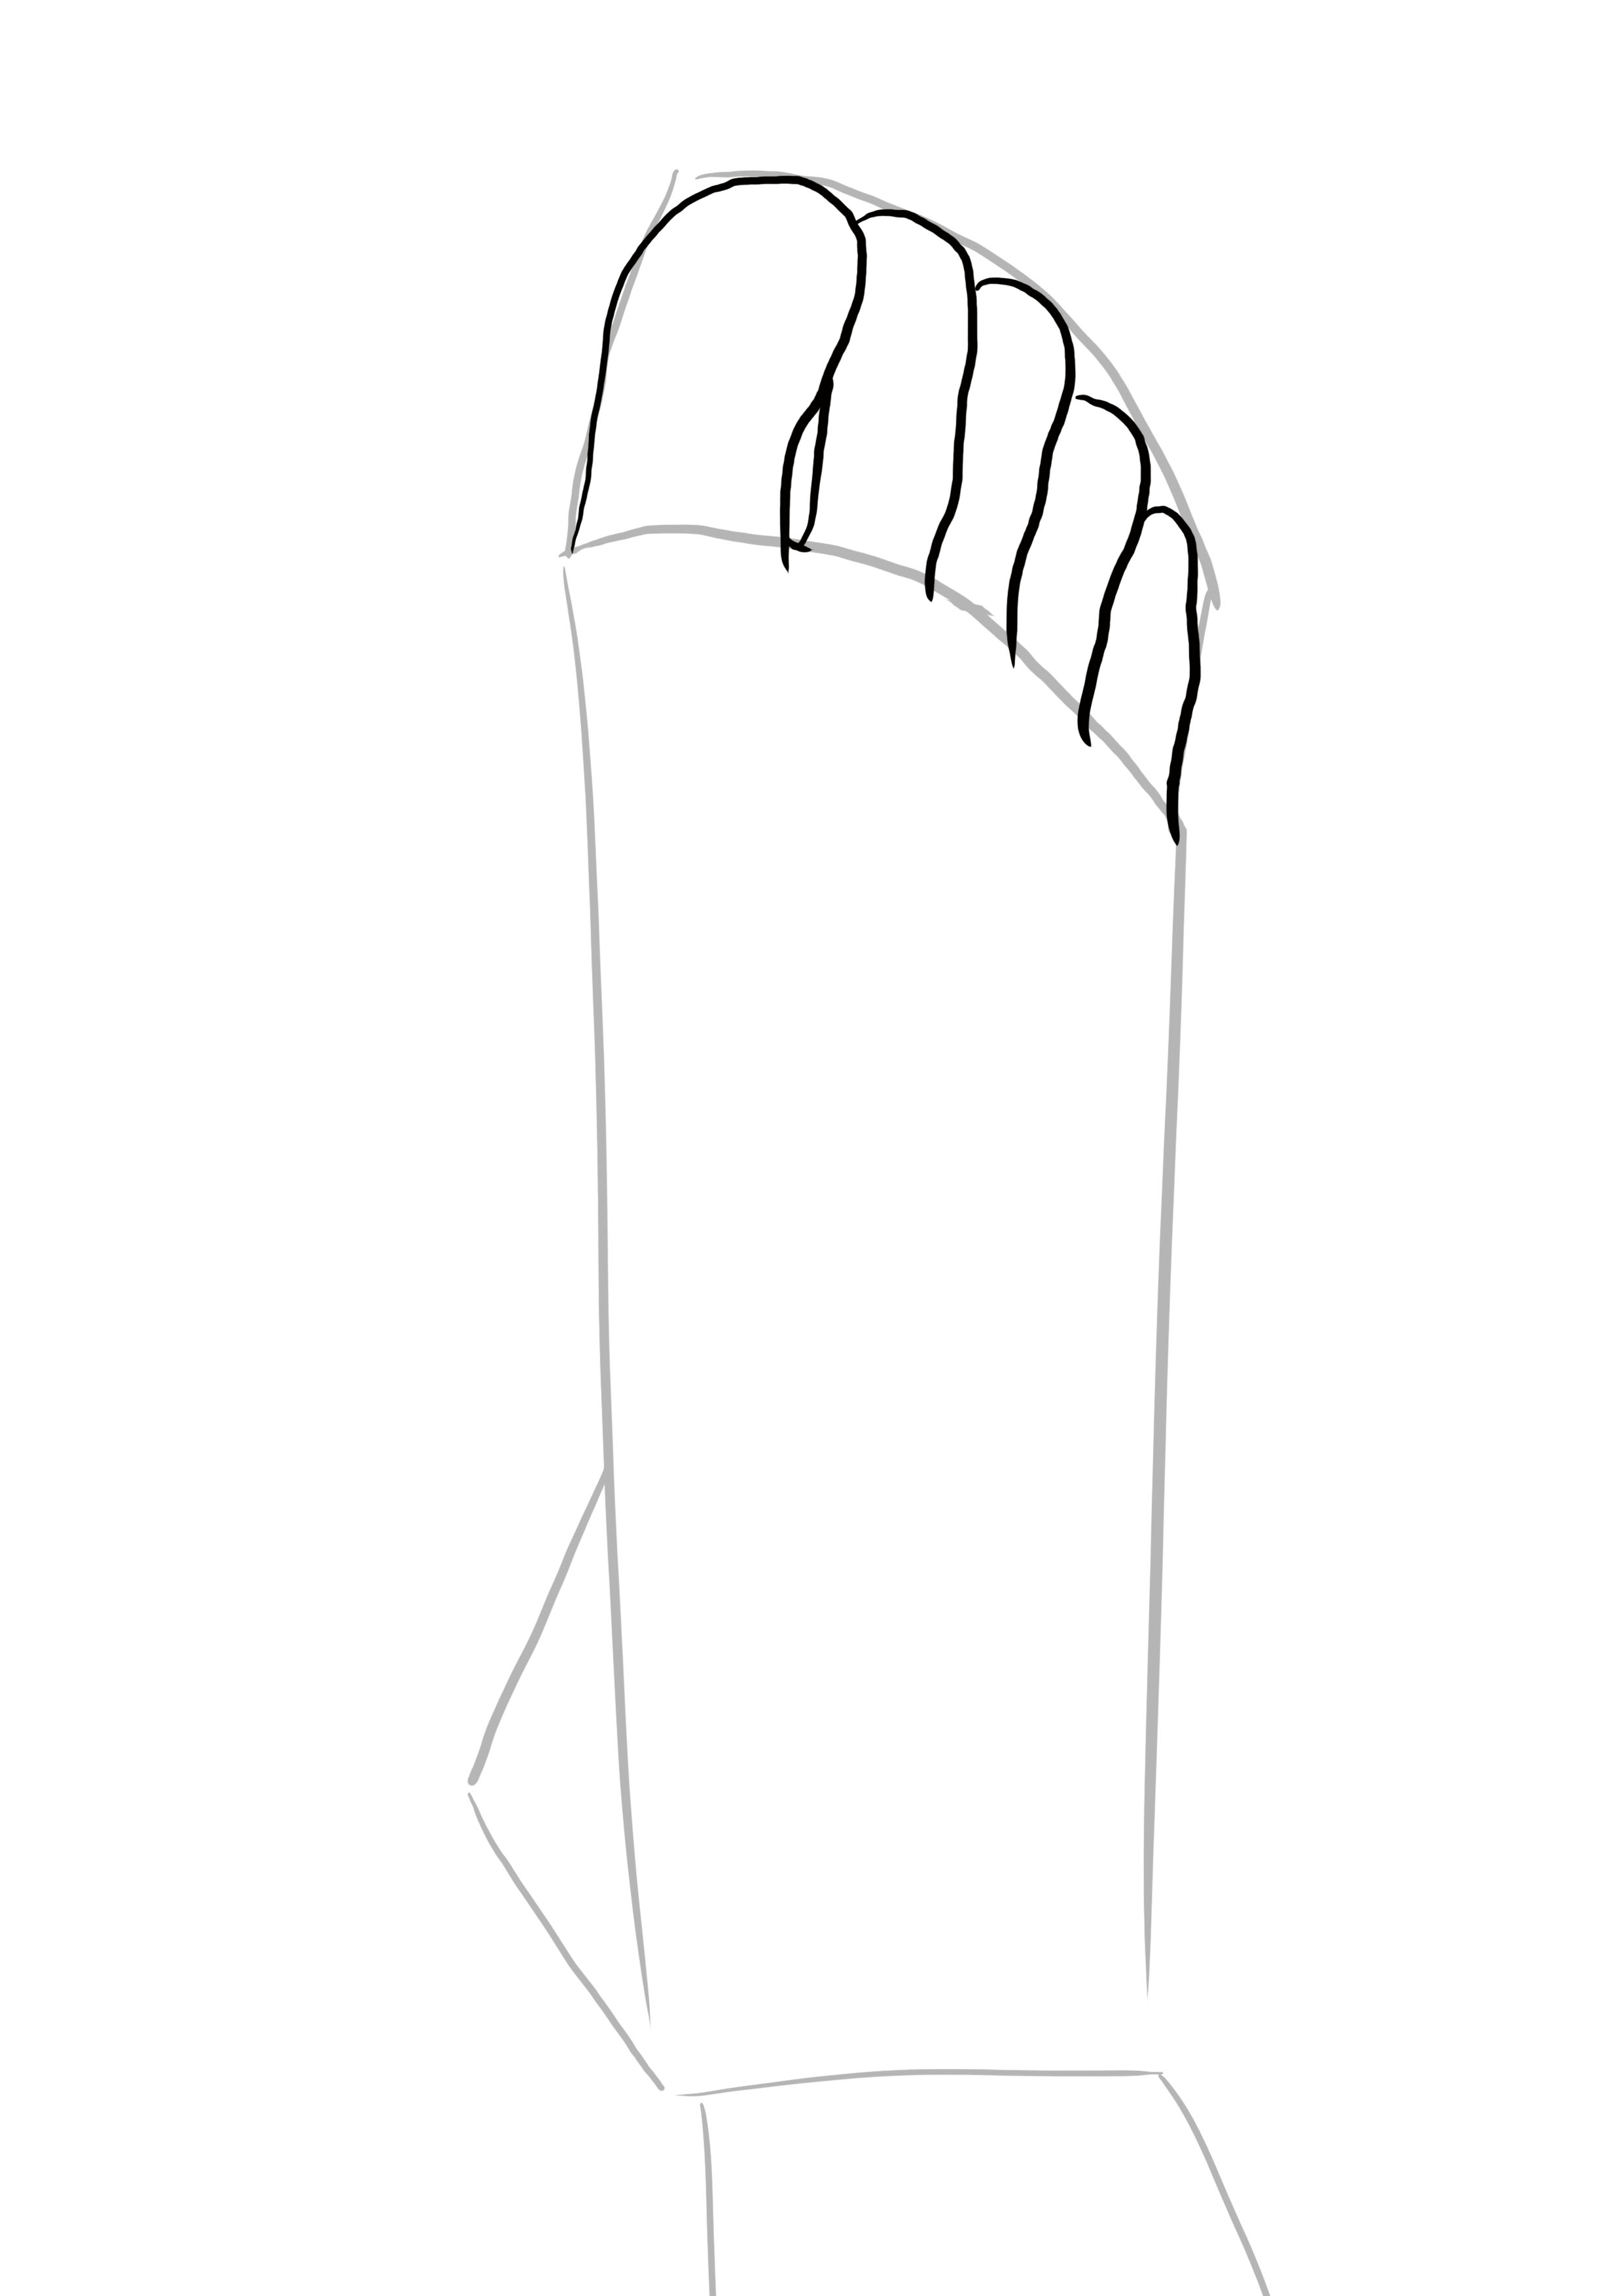 dessin difficile : les orteils du pied